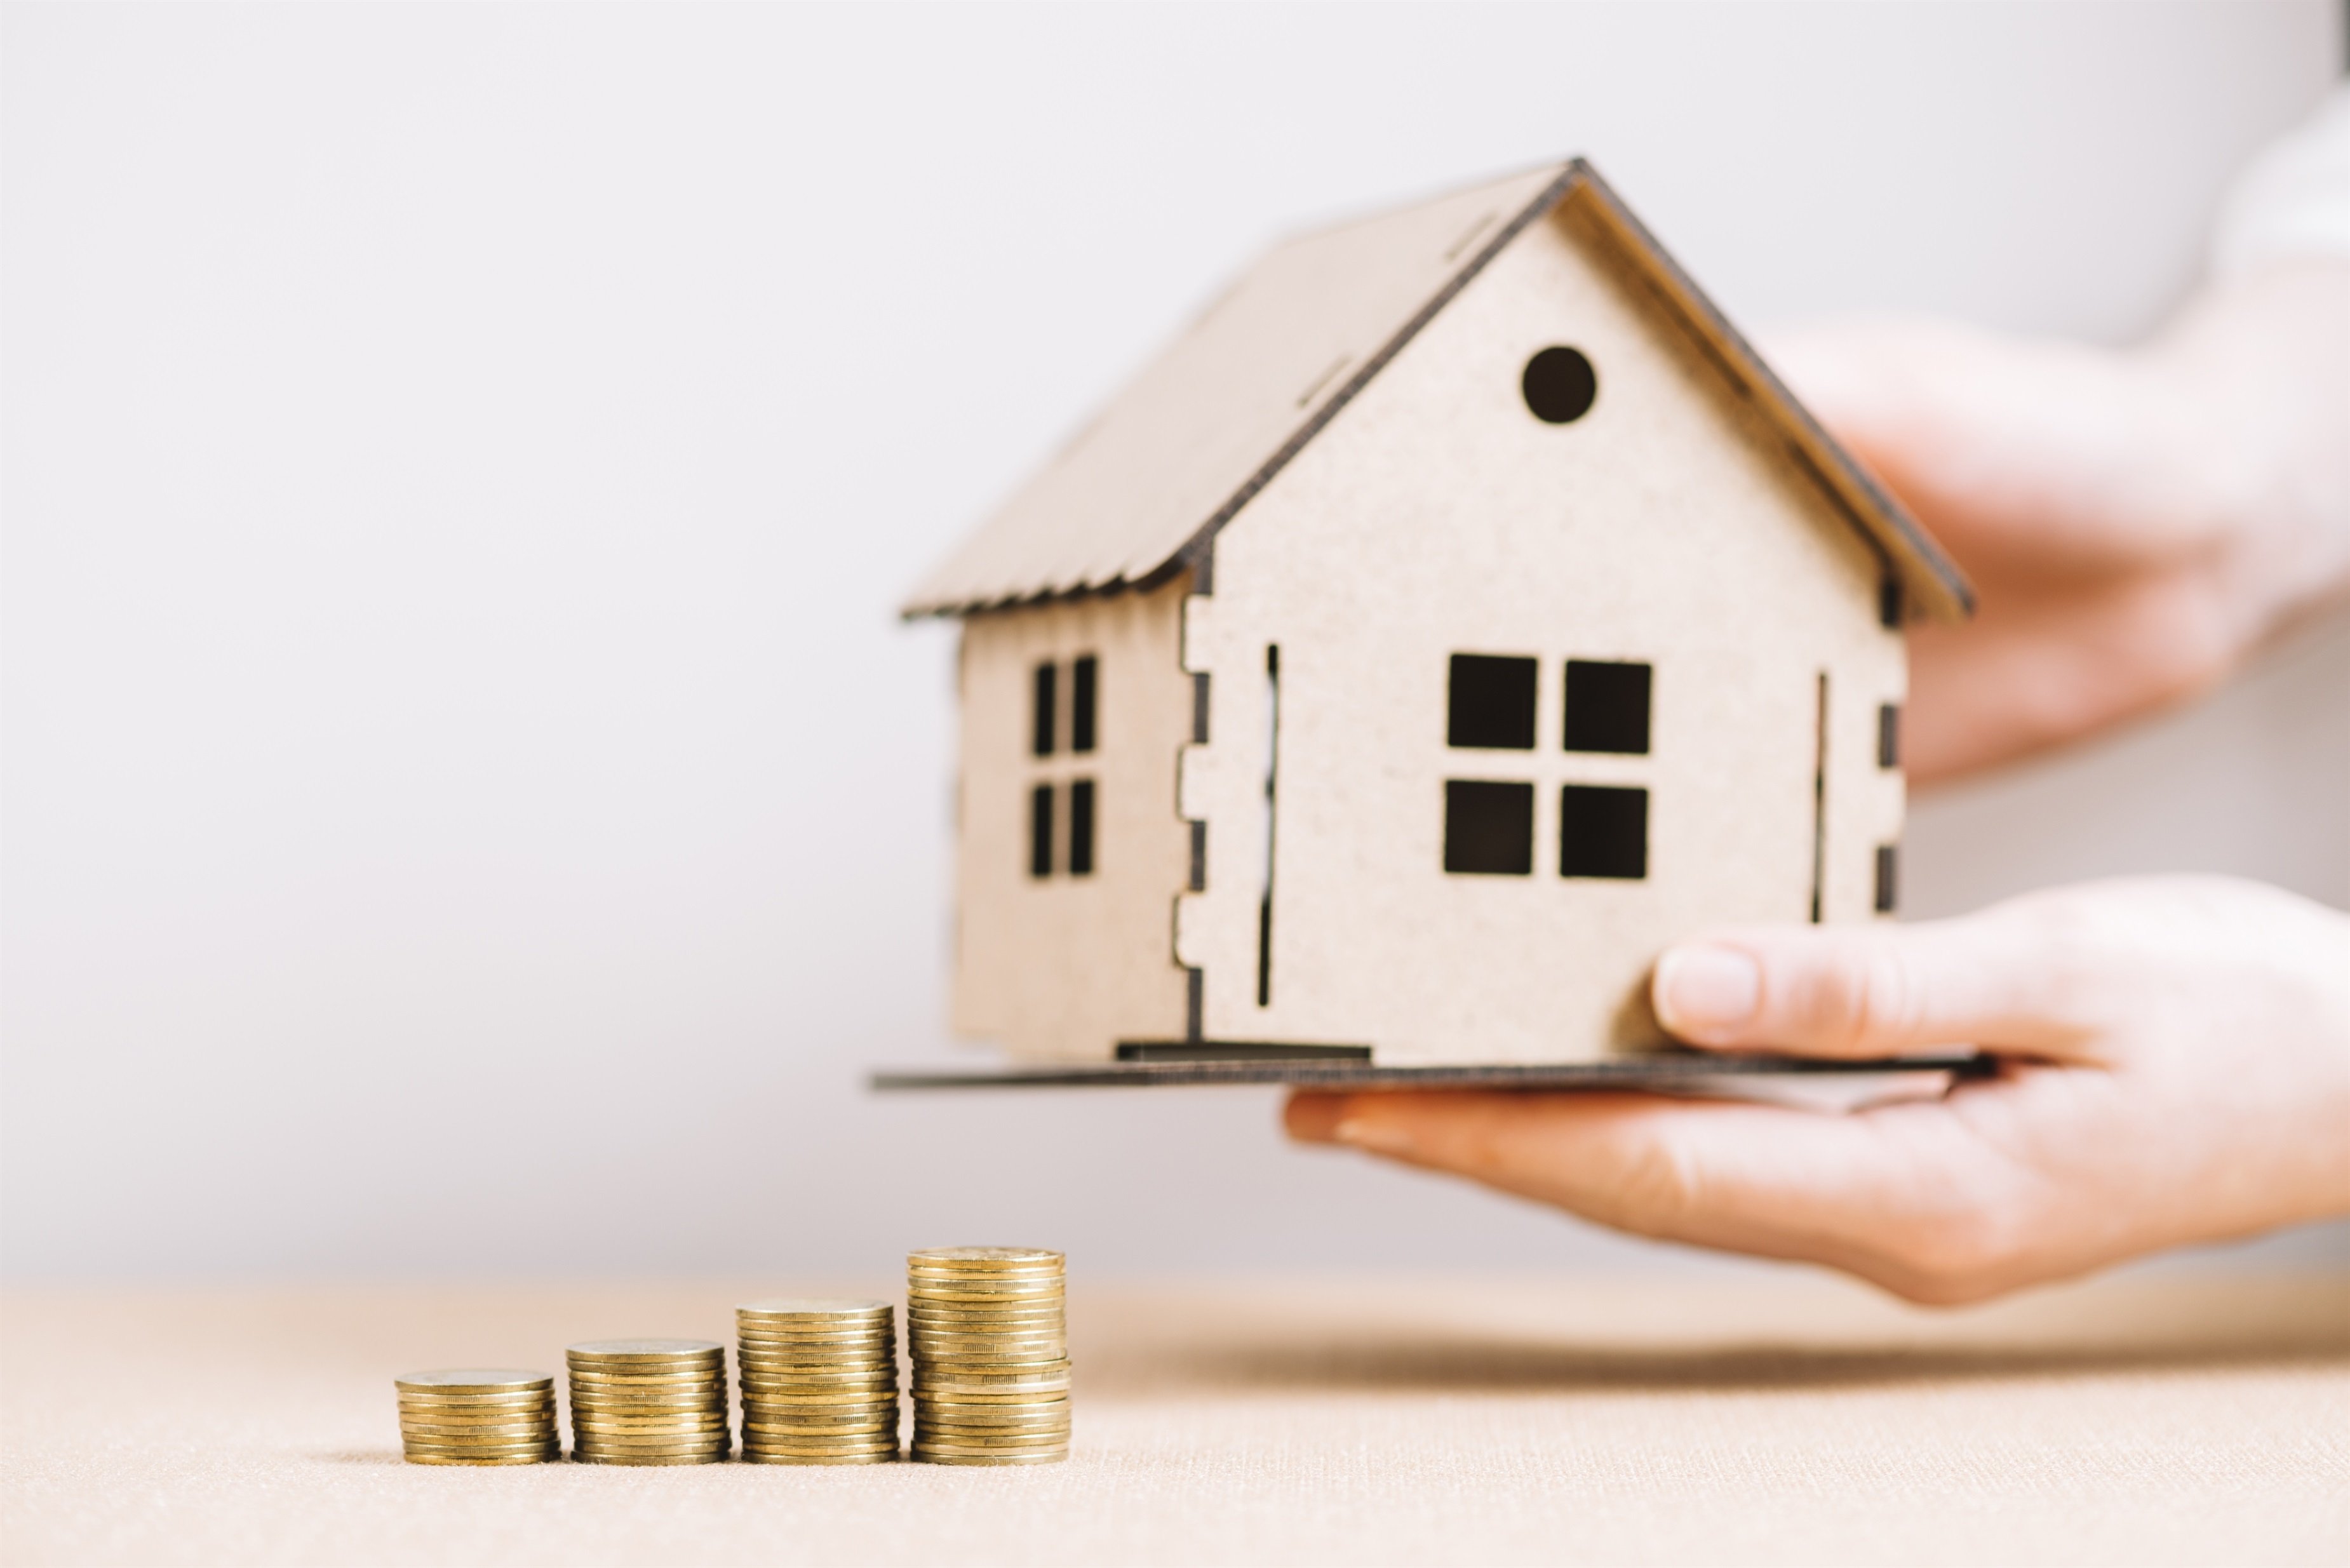 És un bon moment per fer una subrogació de la hipoteca?